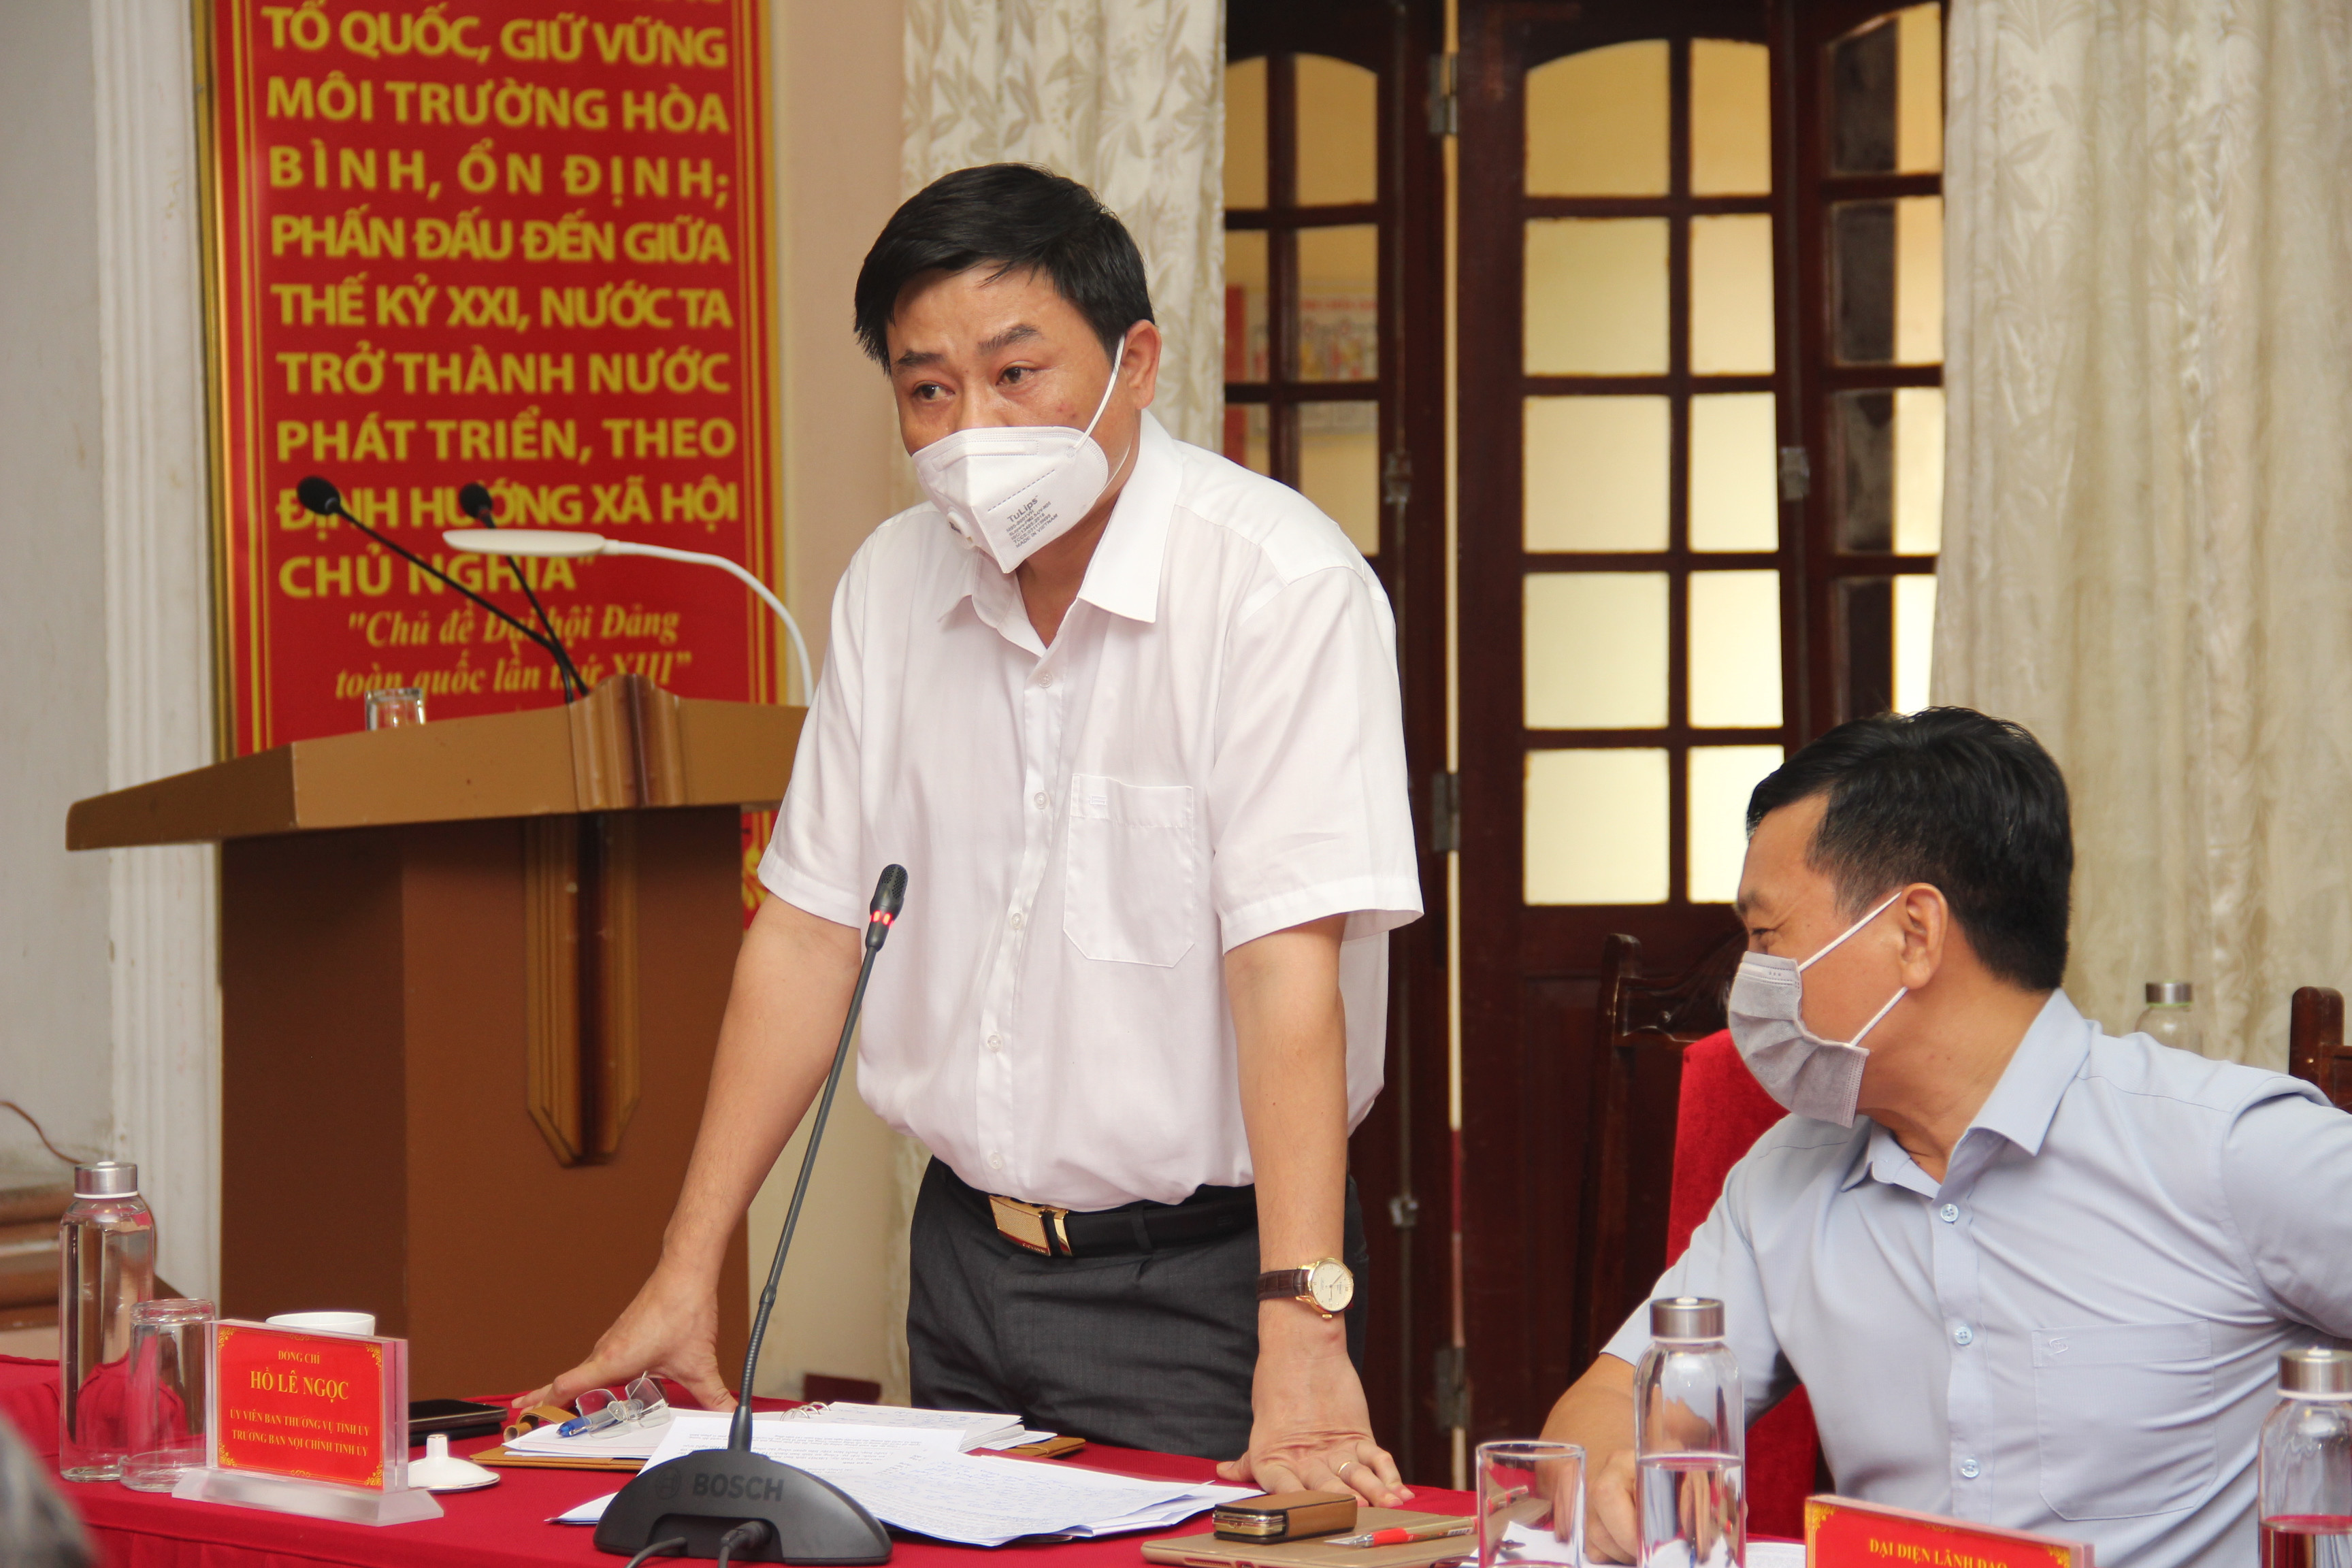 Đồng chí Hồ Lê Ngọc -Ủy viên Ban Thường vụ, Trưởng ban Nội chính Tỉnh ủy nêu một số ý kiến về xử lý vi phạm đối với công tác bảo vệ rừng. Ảnh: Hoài Thu